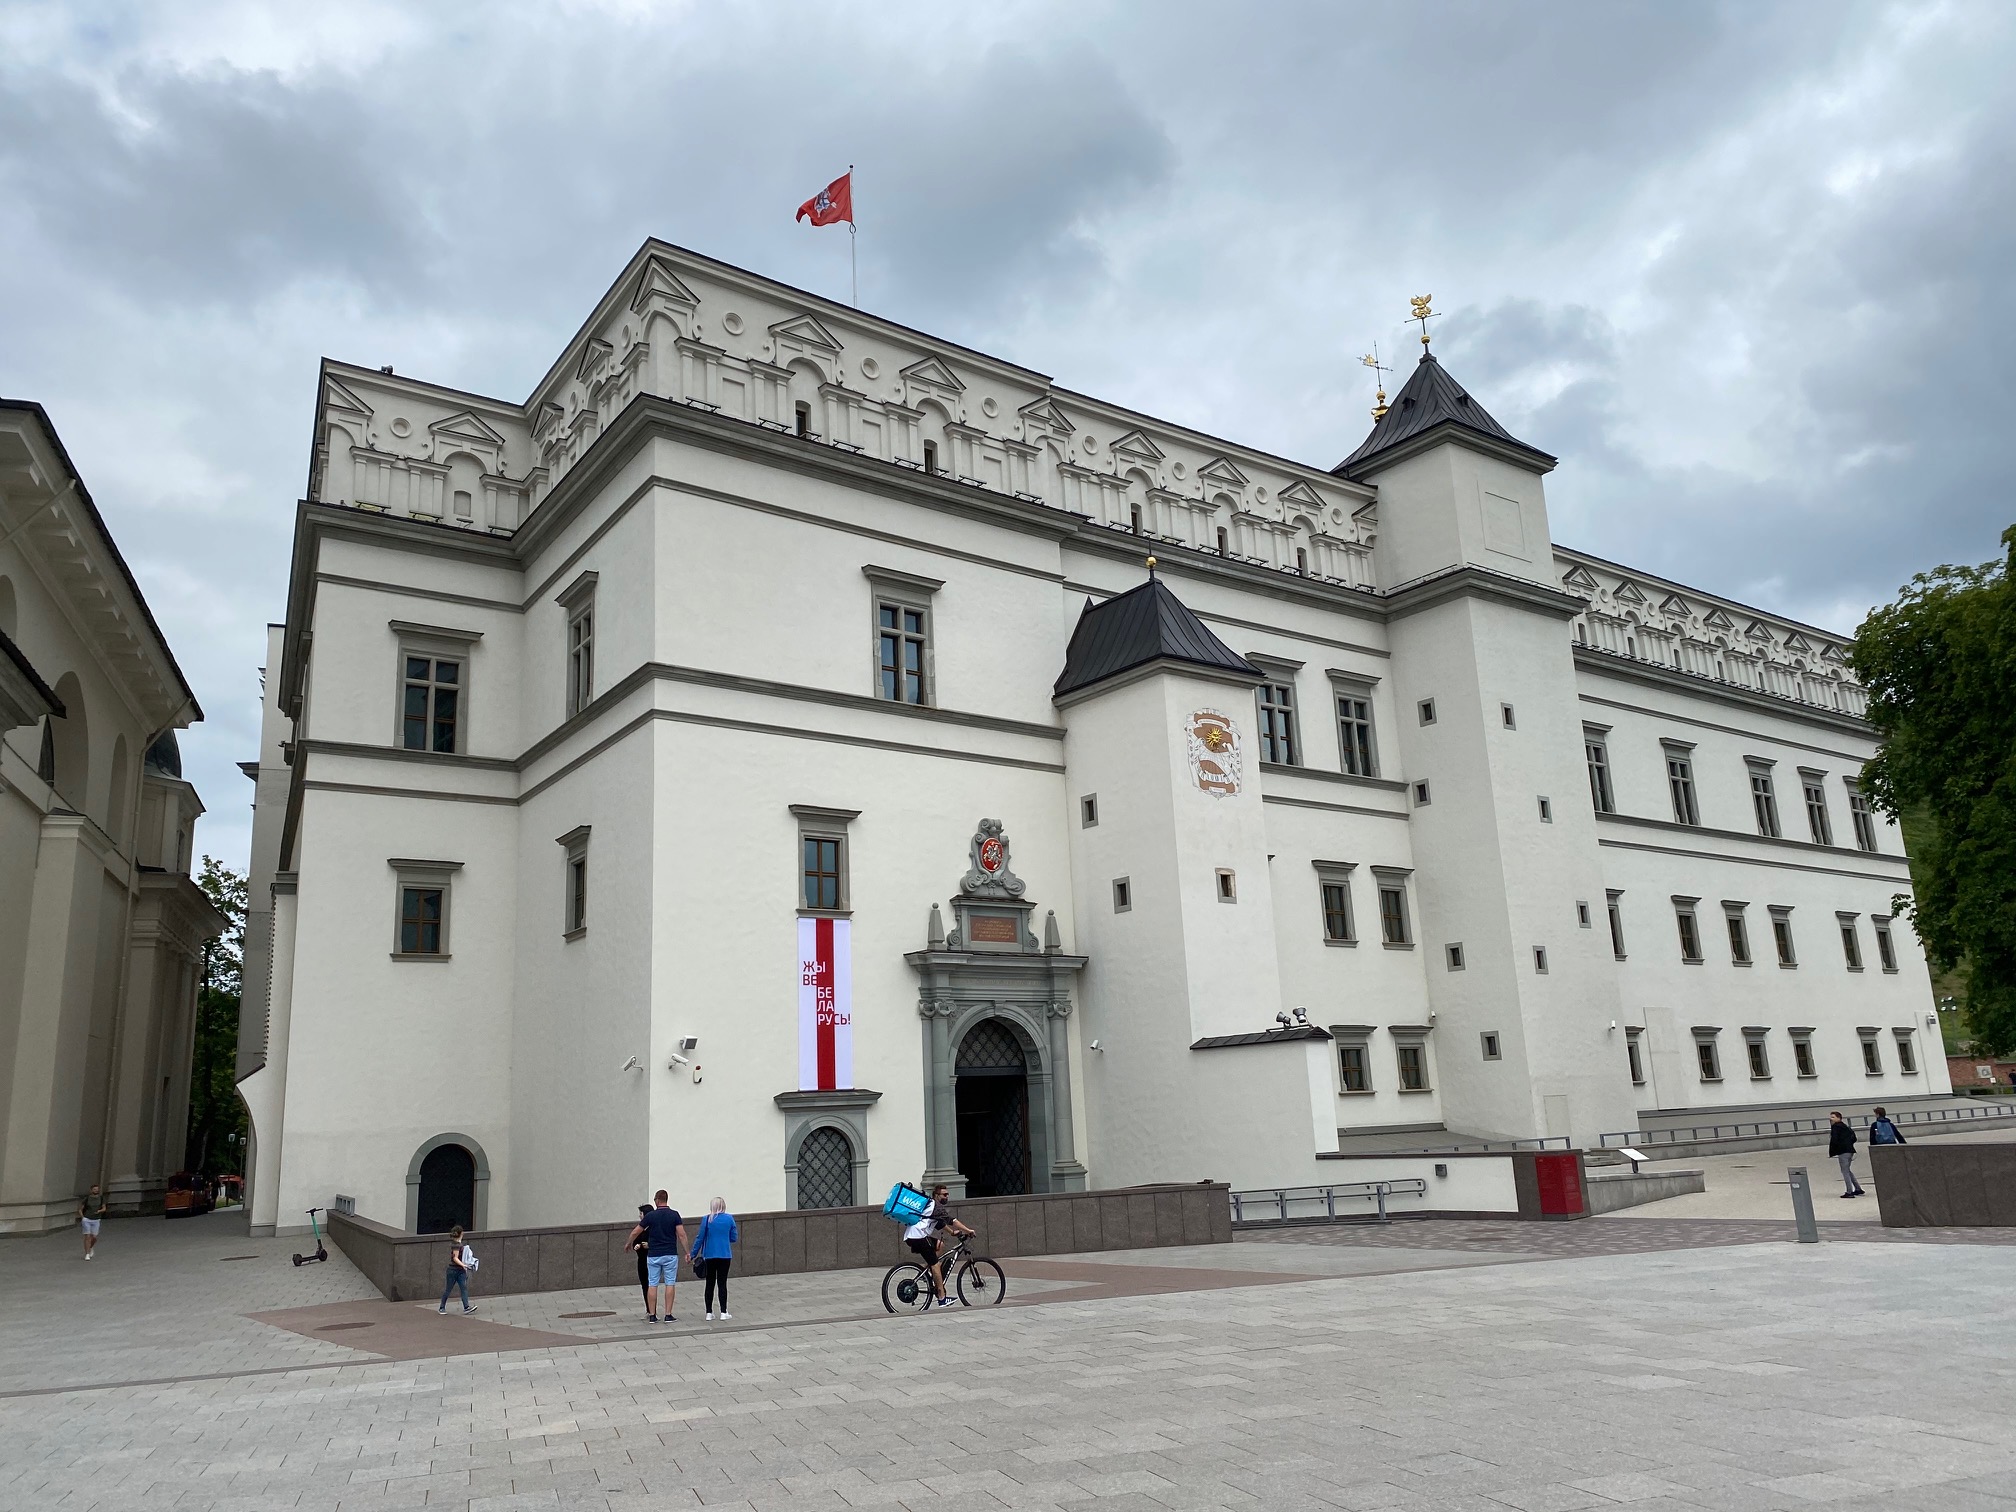  Valdovų rūmų muziejus simboliškai papuošė fasadą istorine baltarusių vėliava, kitais palaikymo ženklais | Valdovų rūmų muziejaus nuotr.